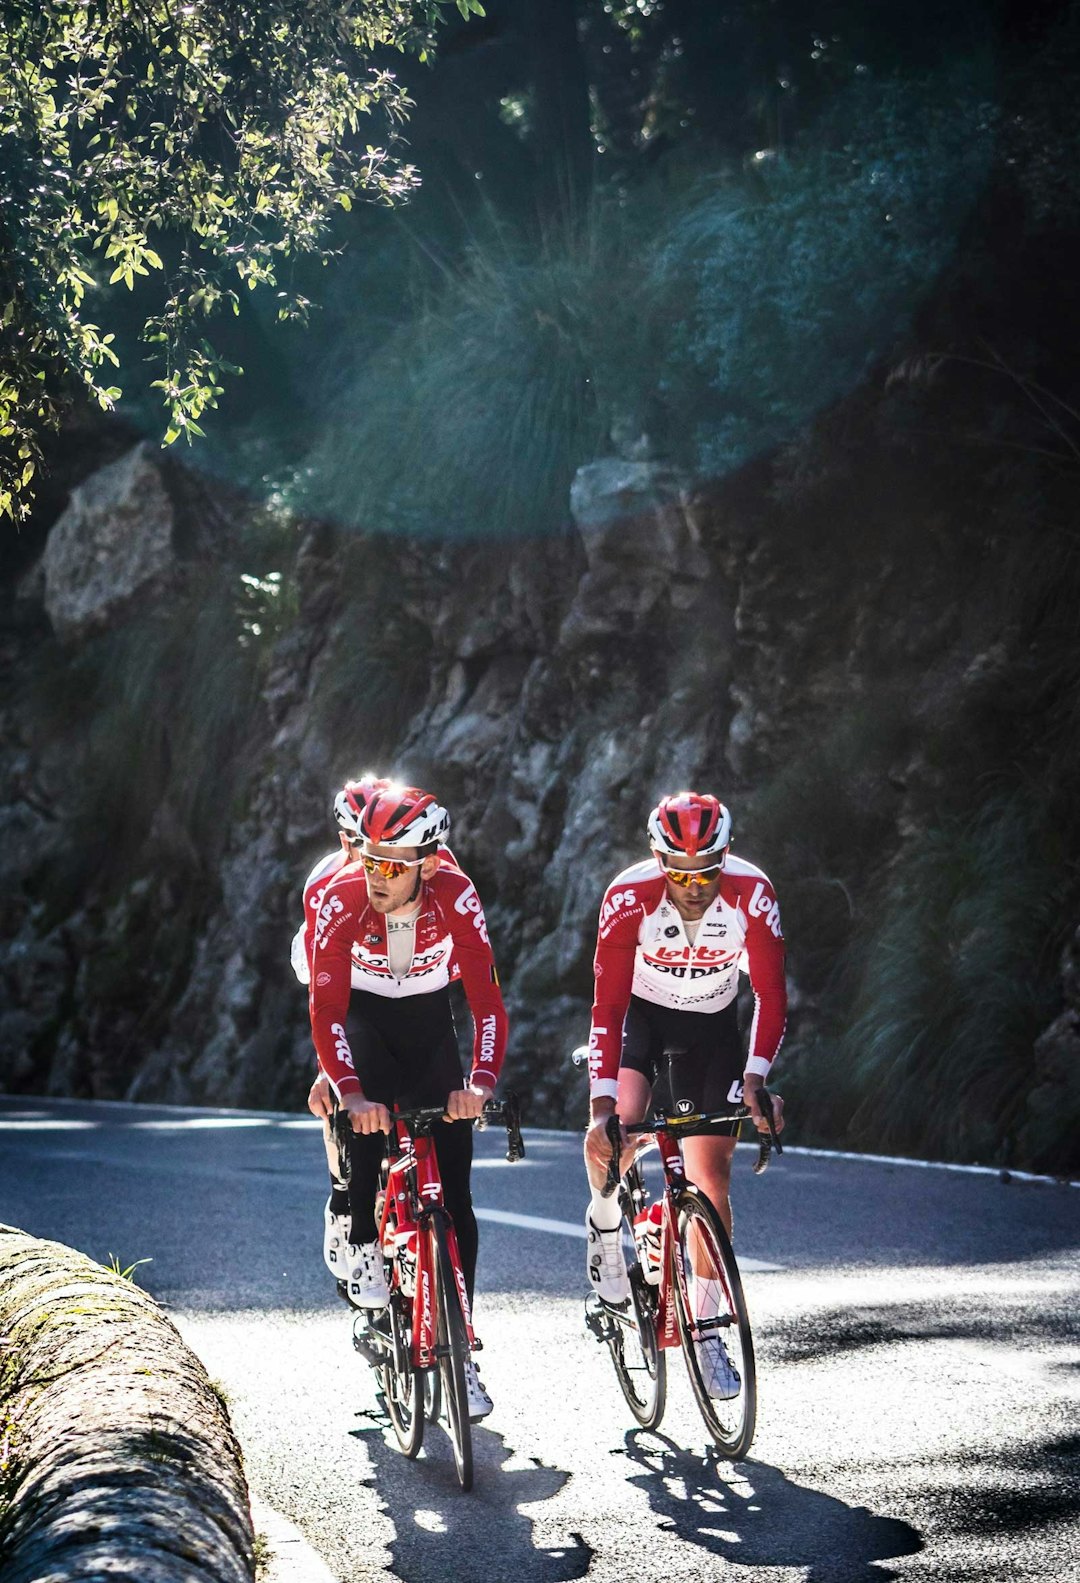 FORBEREDELSER: Benoot trener regelmessig i høyden for å forberede seg til Tour de France på optimalt vis. Her er han sammen med lagkompisene sine på en tidlig treningsleir på Mallorca i desember 2018. Foto: Tom Peeters.